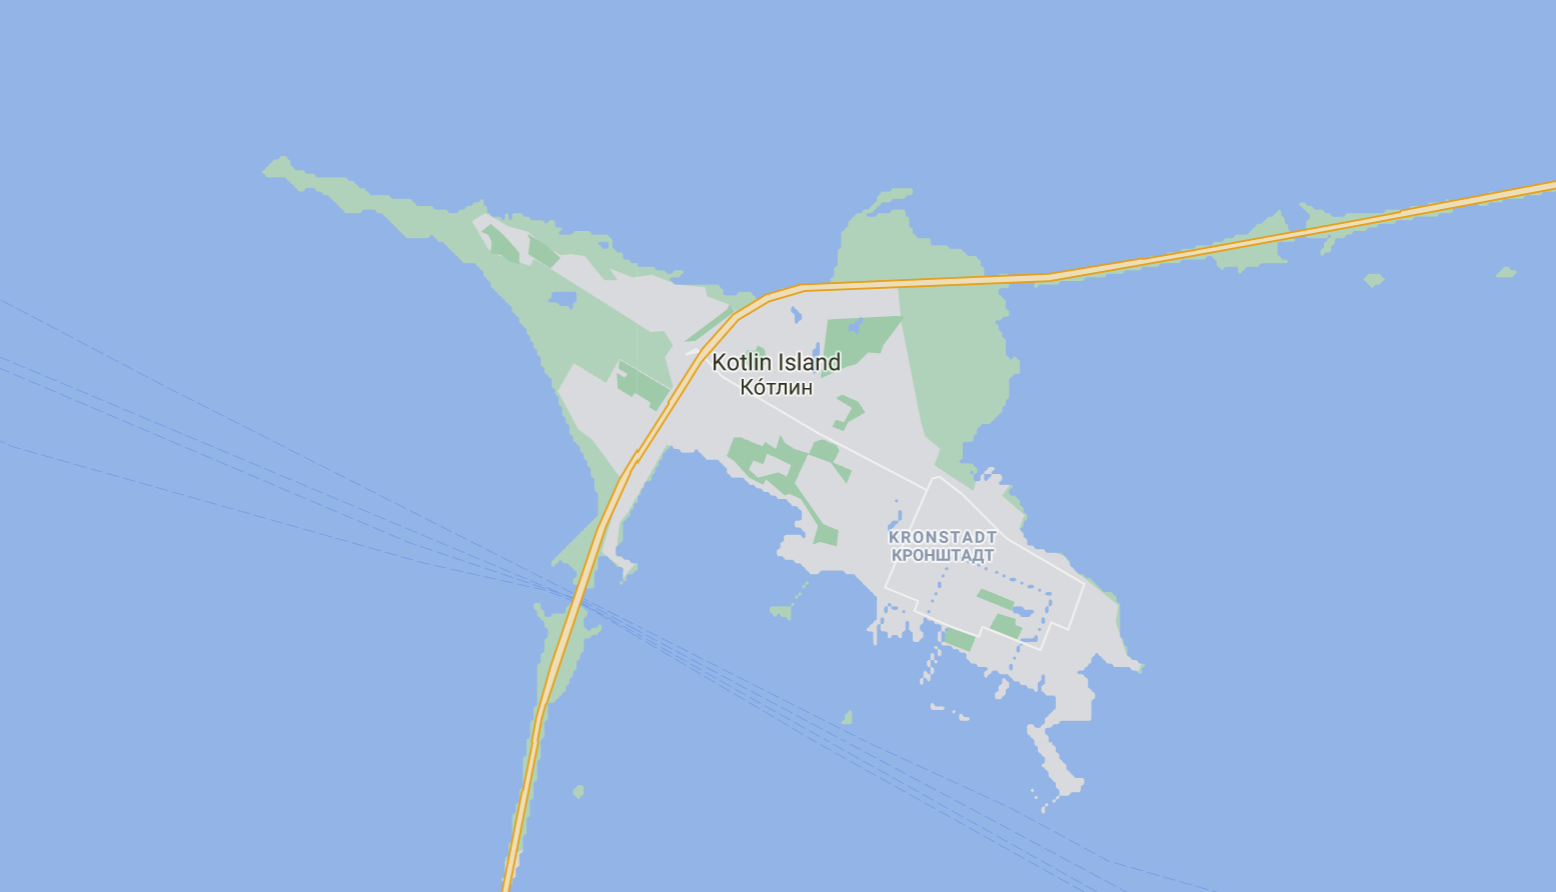 An image of Kotlin island